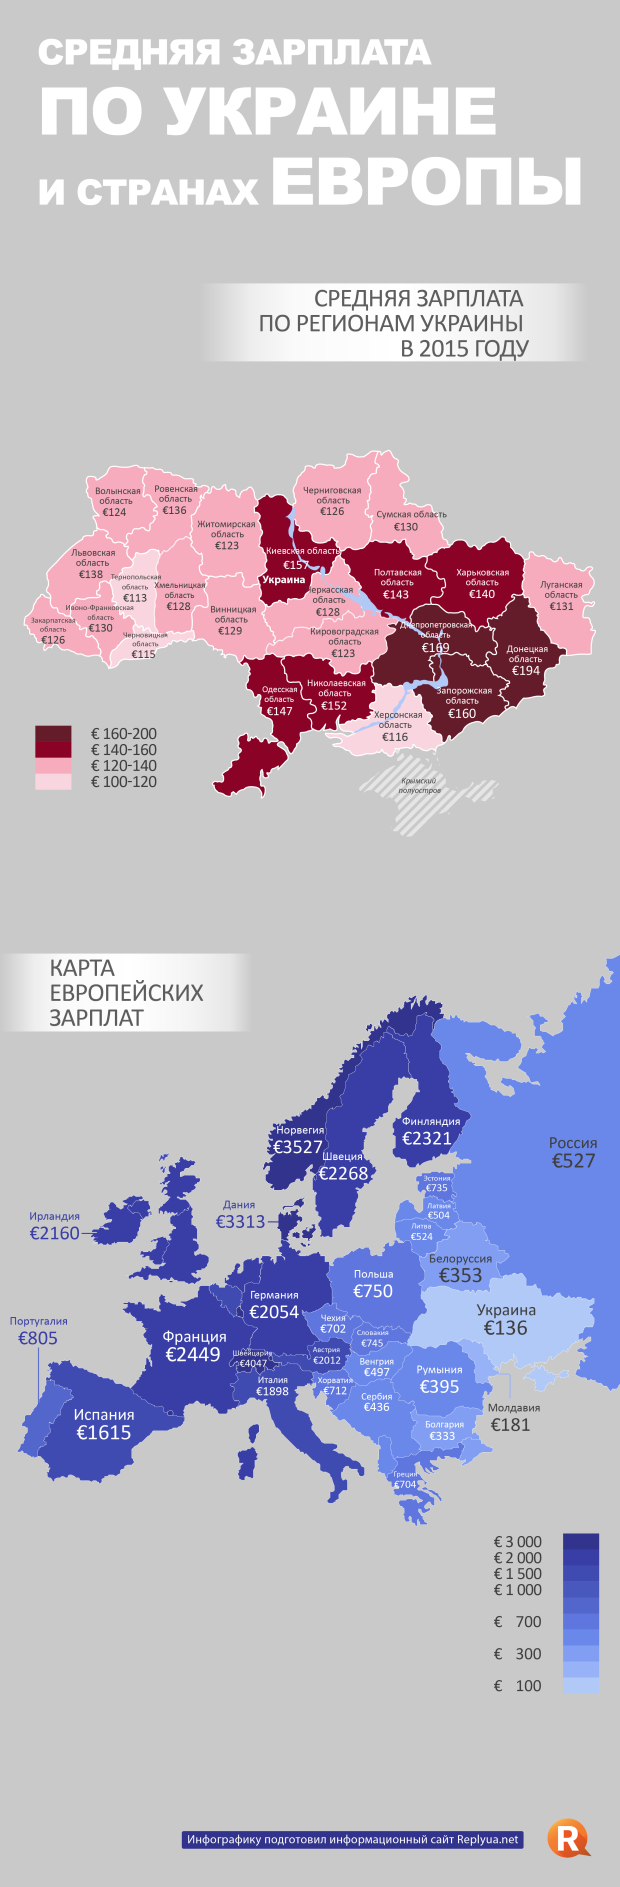 Средняя зарплата по Украине и странах Европы - инфографика